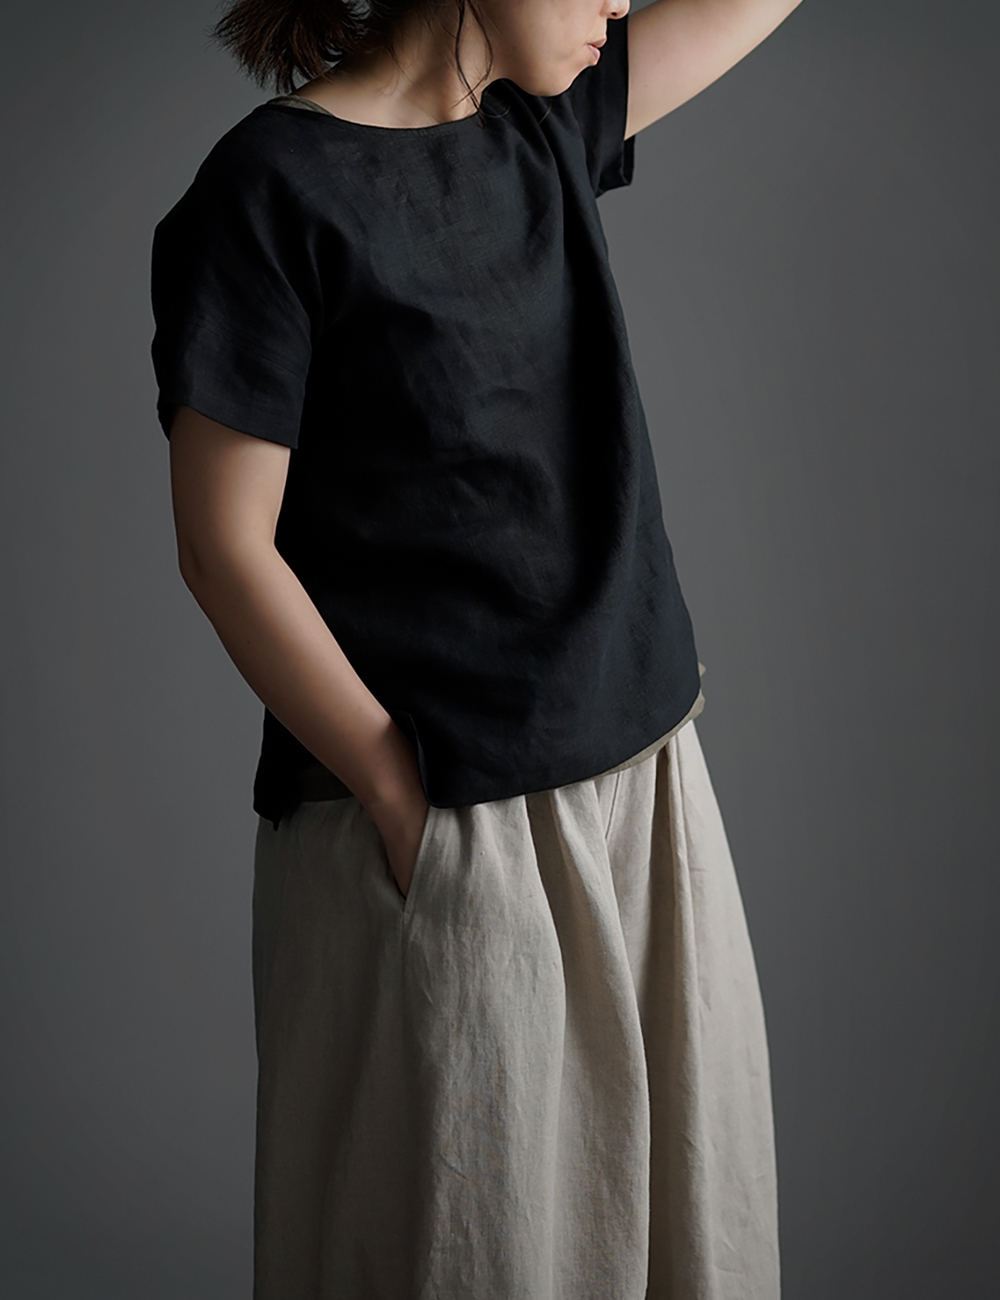 【wafu】Linen T-shirt ドロップショルダー Tシャツ　/黒色 t001l-bck1